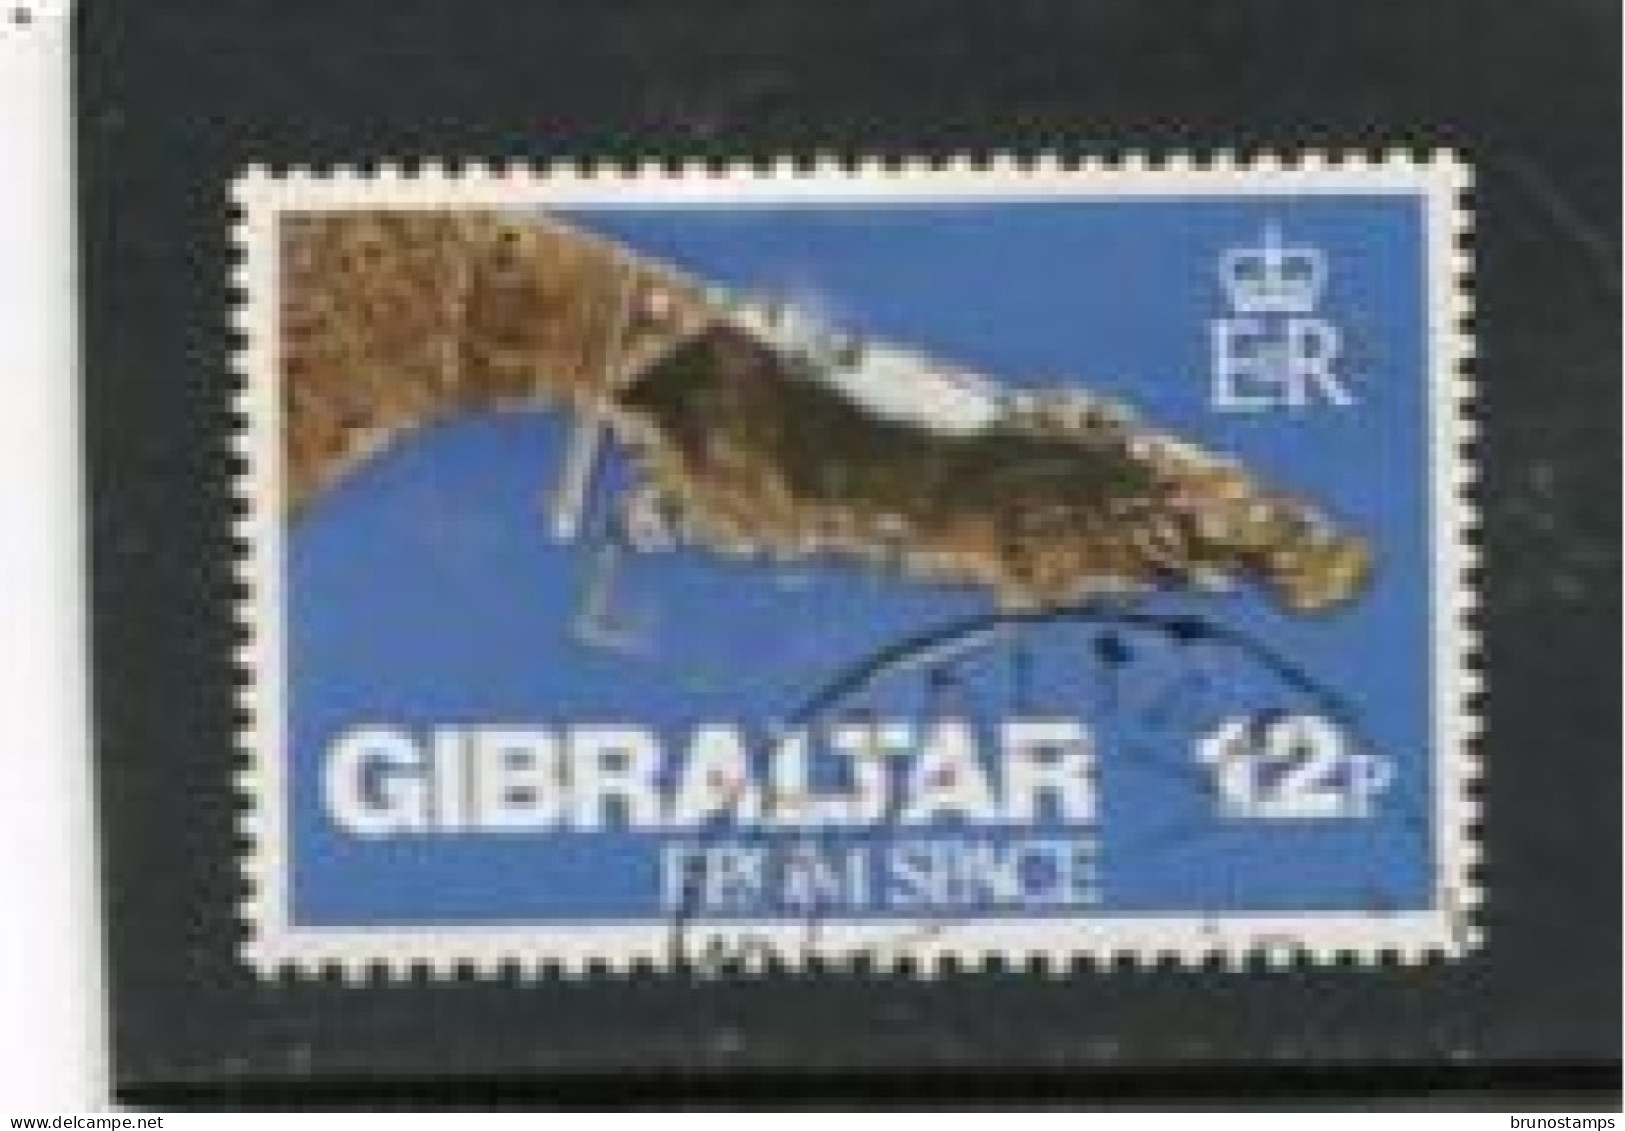 GIBRALTAR - 1978  12p  EUROPA POINT  FINE USED - Gibraltar